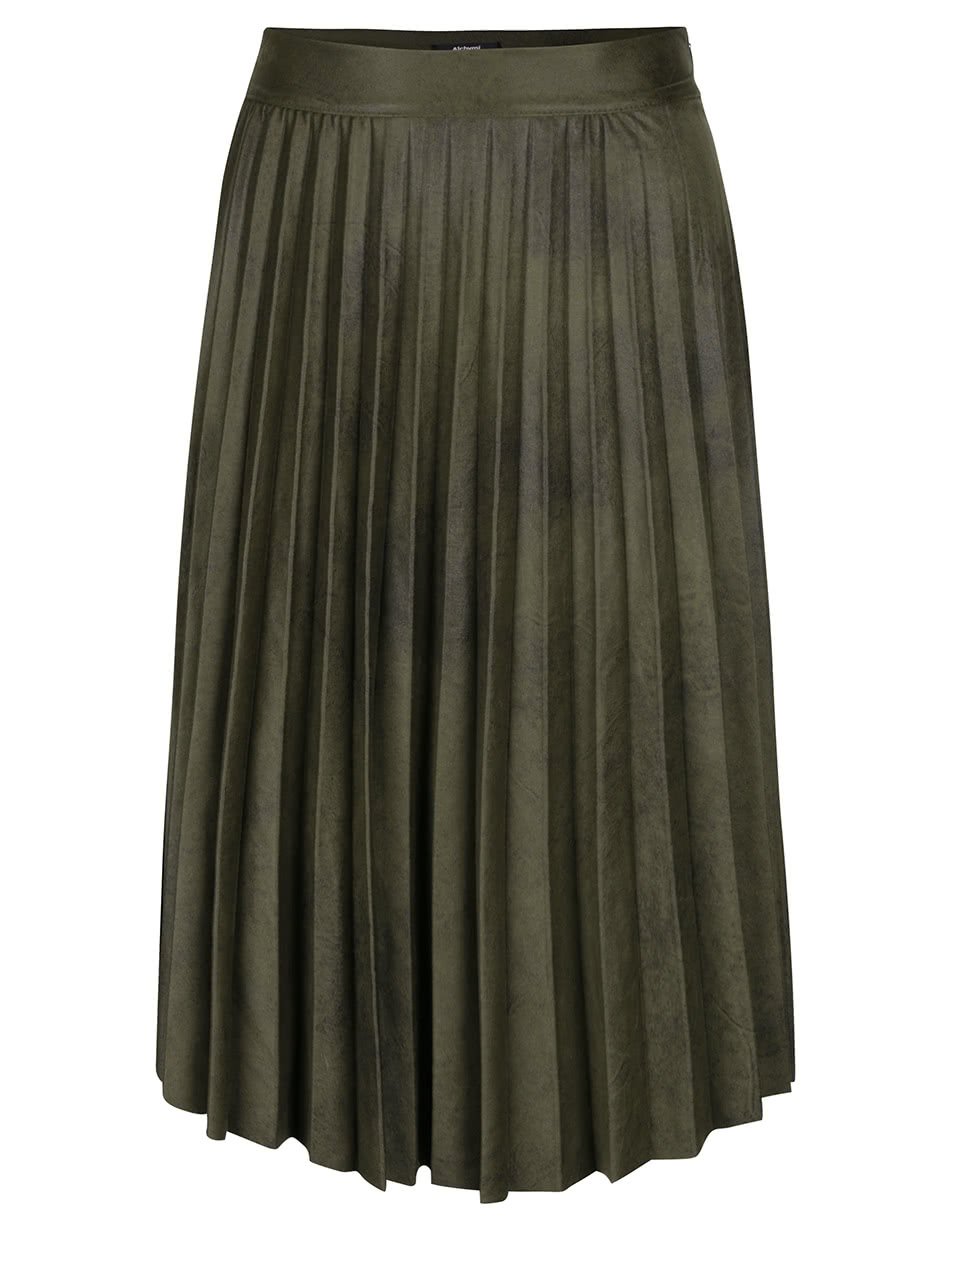 Olivově zelená plisovaná sukně Alchymi